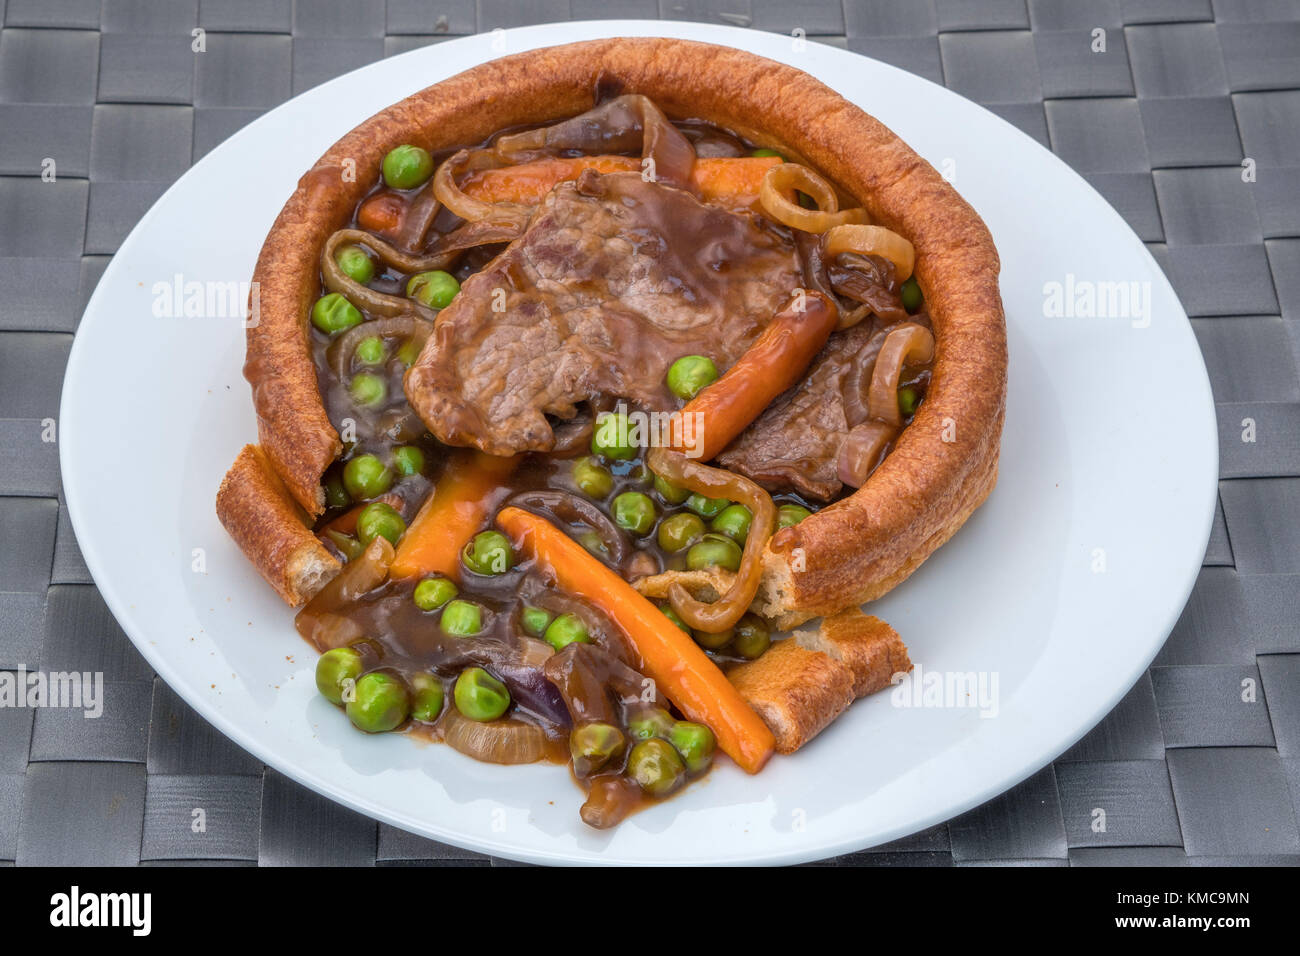 Ein gefüllter Yorkshire-Pudding mit geschnittenem Rindfleisch, Gemüse und einer dicken Soße. Stockfoto